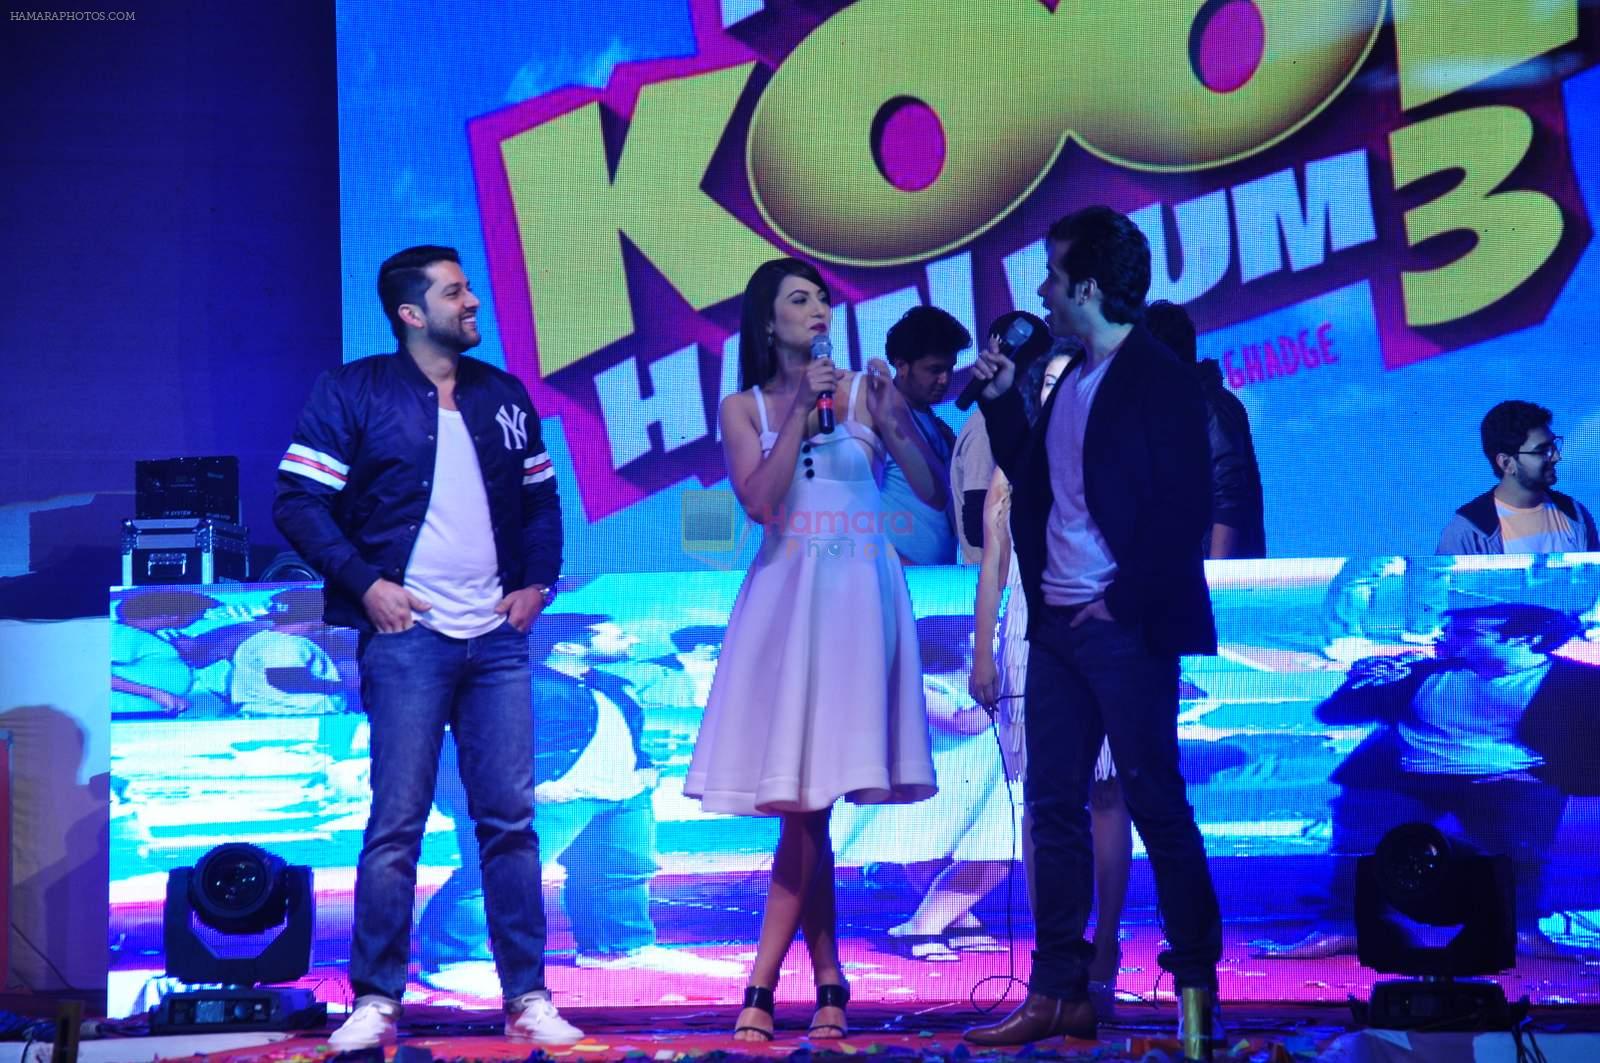 Aftab Shivdasani, Gauhar Khan, Tusshar Kapoor at Kya Kool Hain Hum 3 launch on 18th Dec 2015